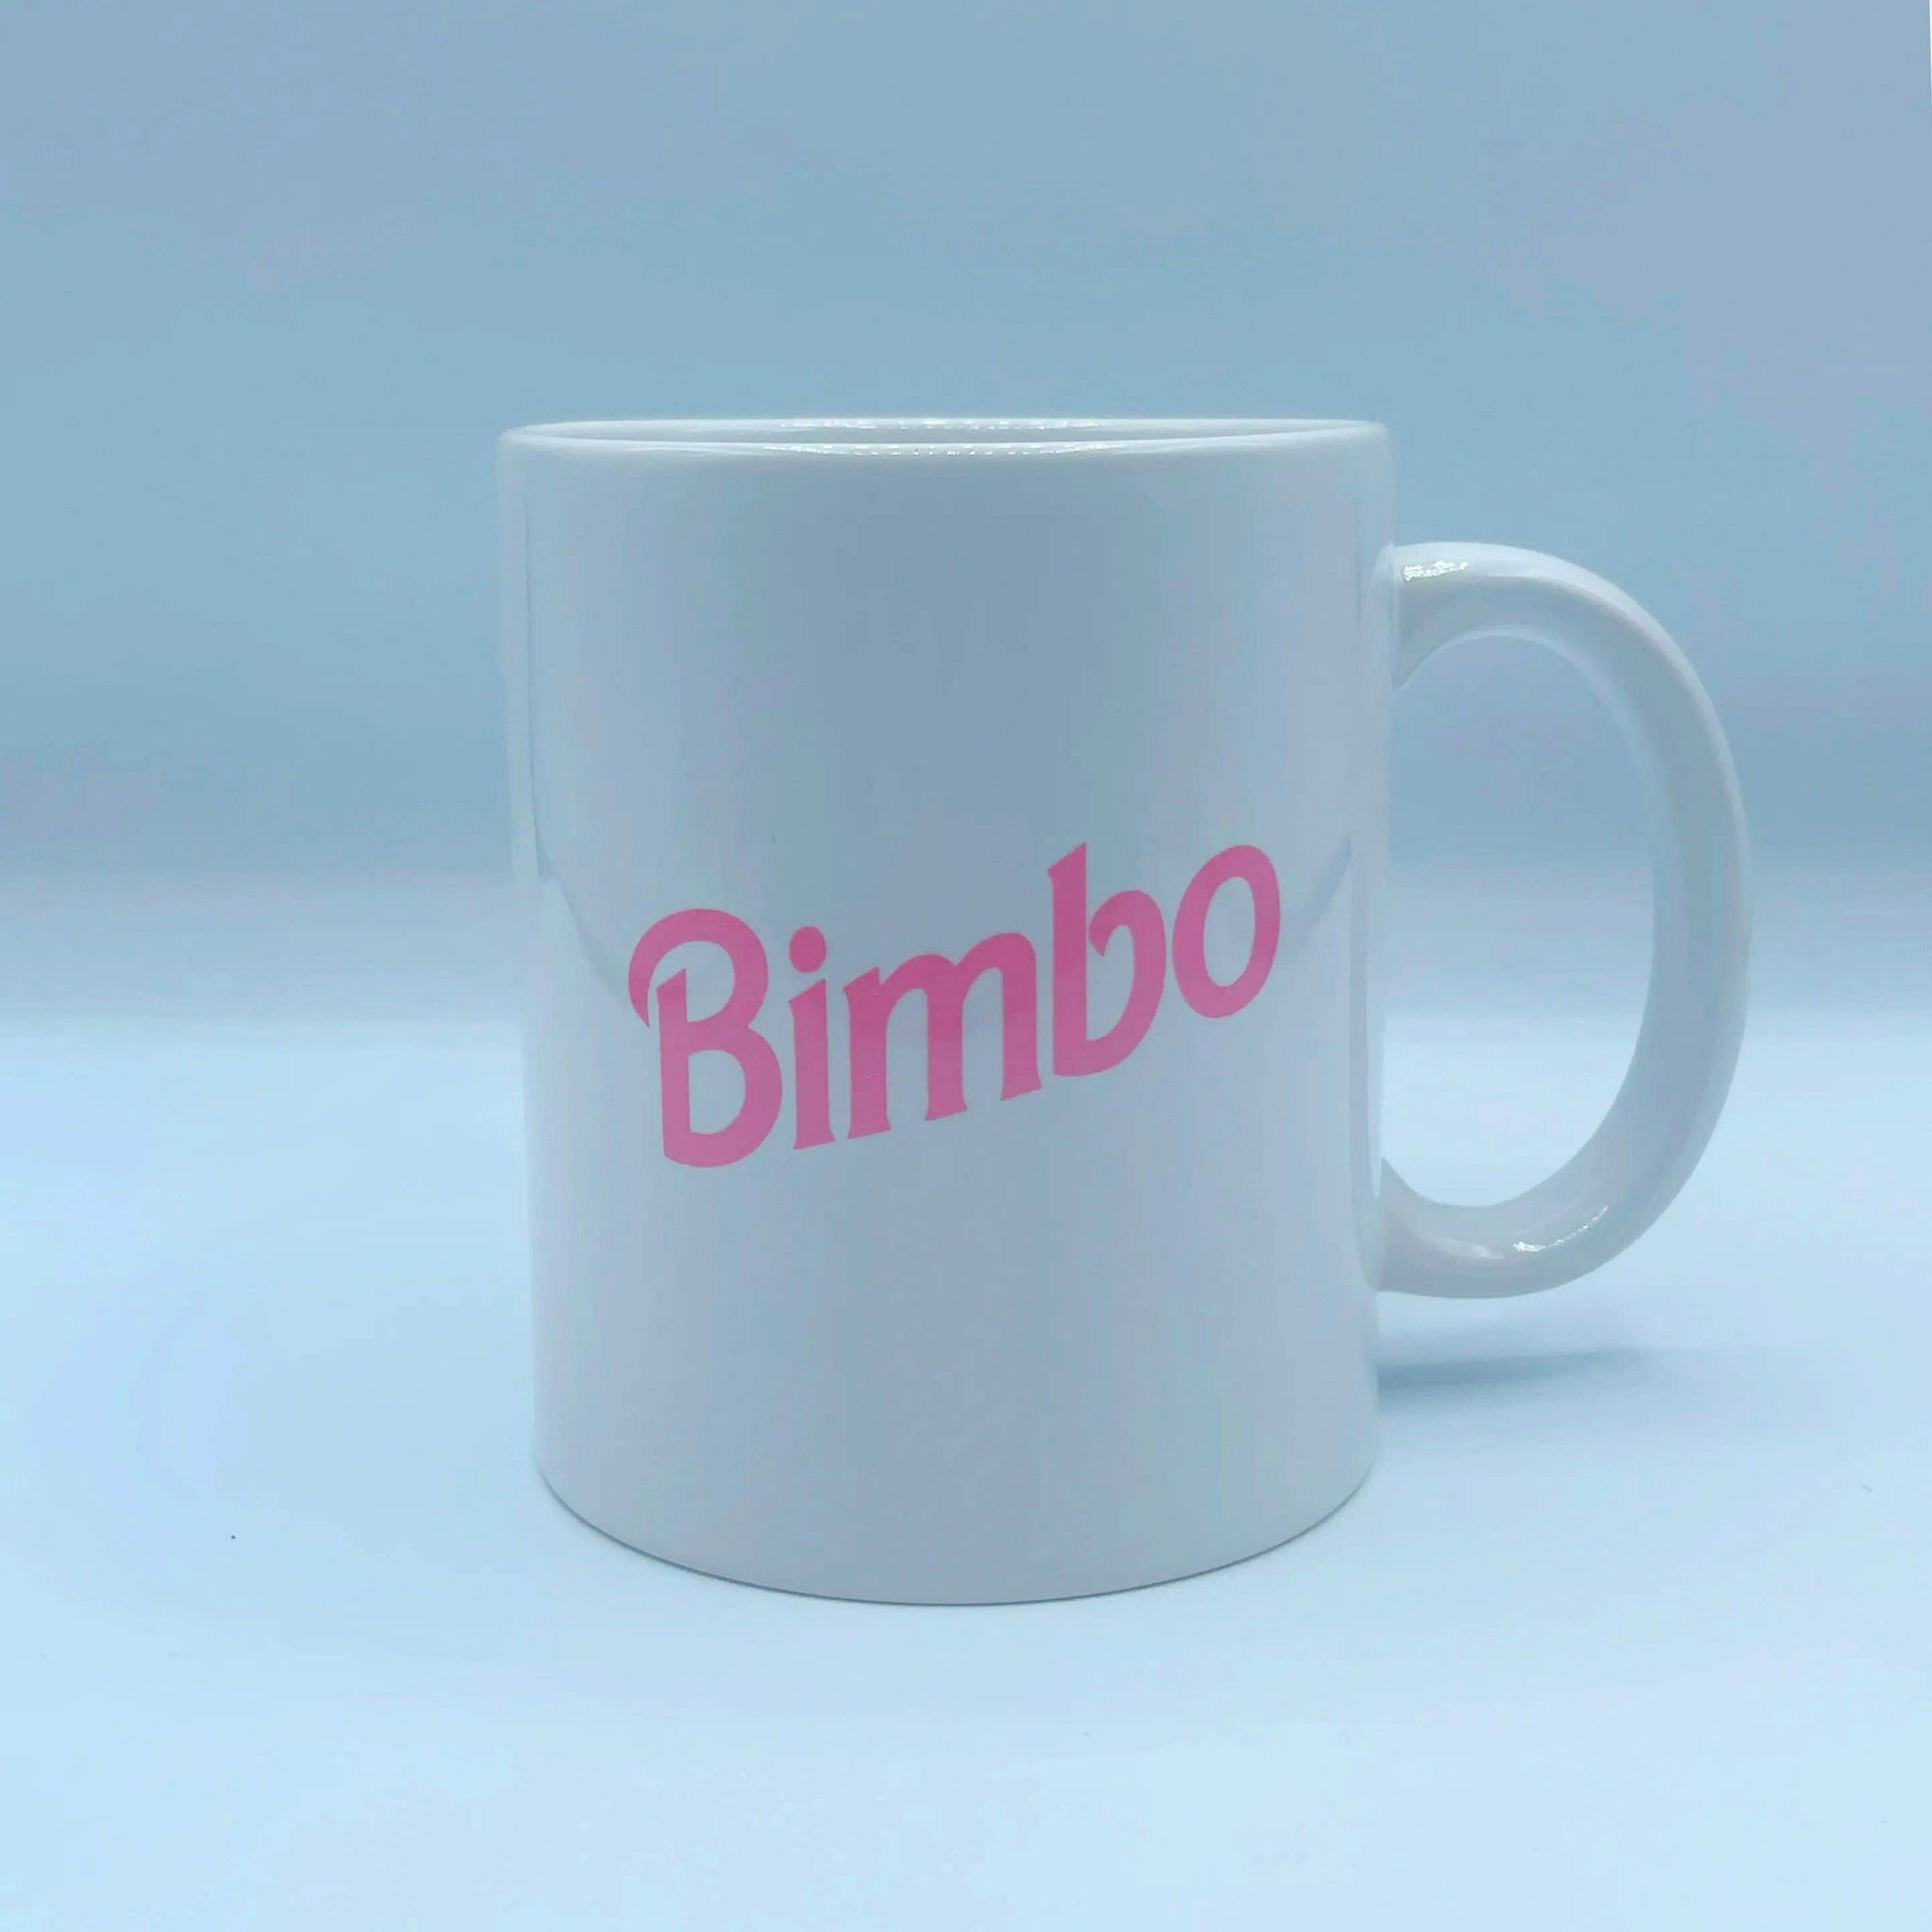 Bimbo Mug